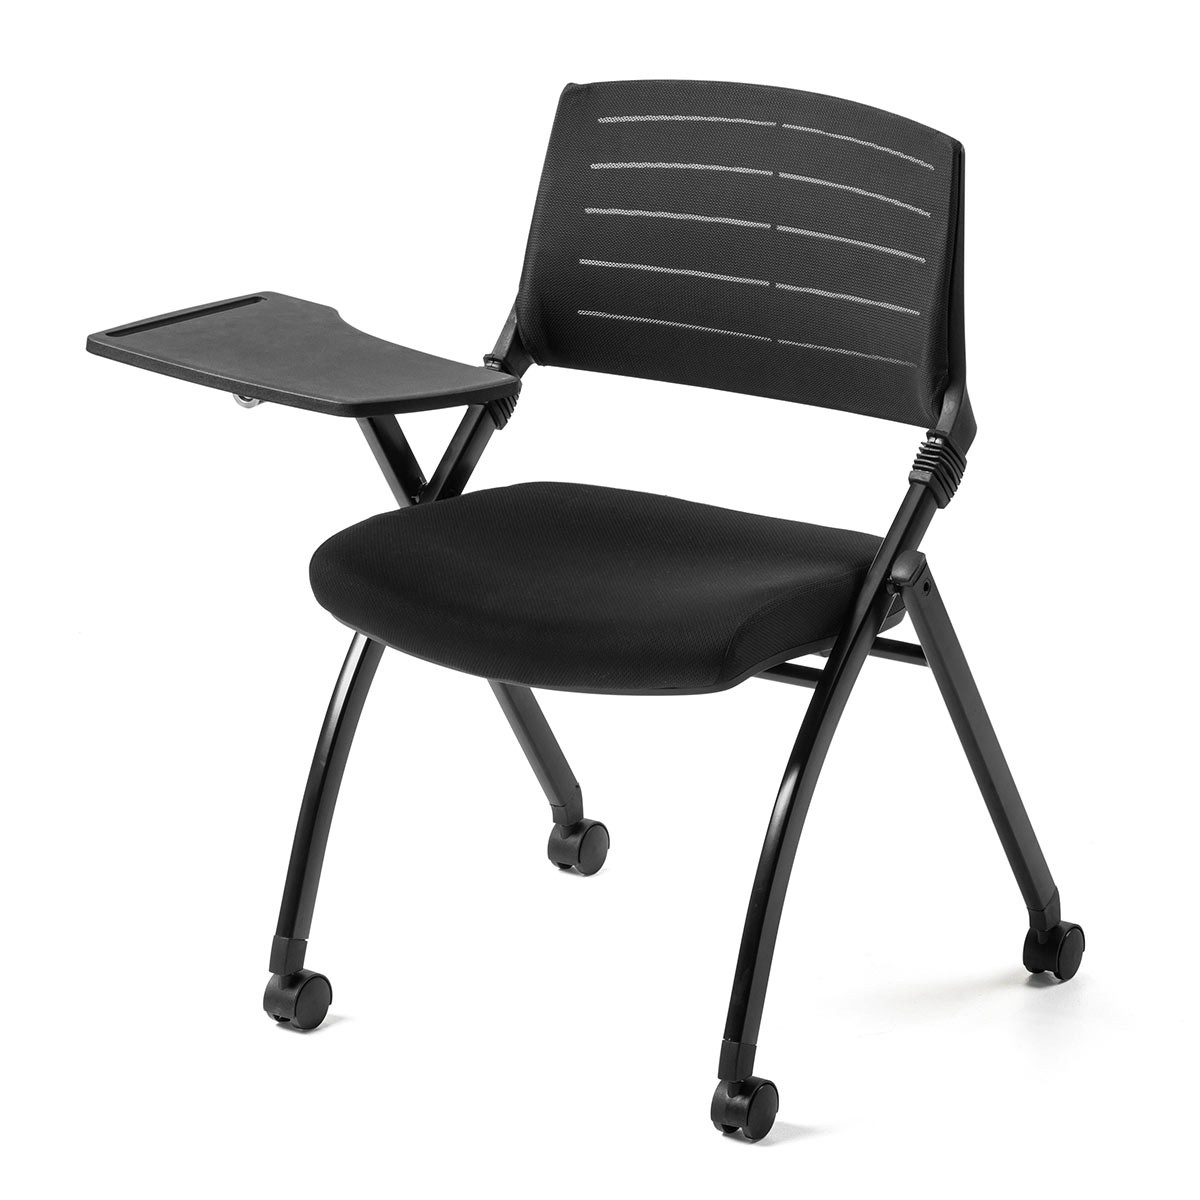 パイプ椅子 テーブル付き メモ台付き 折りたたみ椅子 会議椅子 ミーティングチェア ワークチェア キャスター付 スタッキング メッシュ 低反発  2脚セット